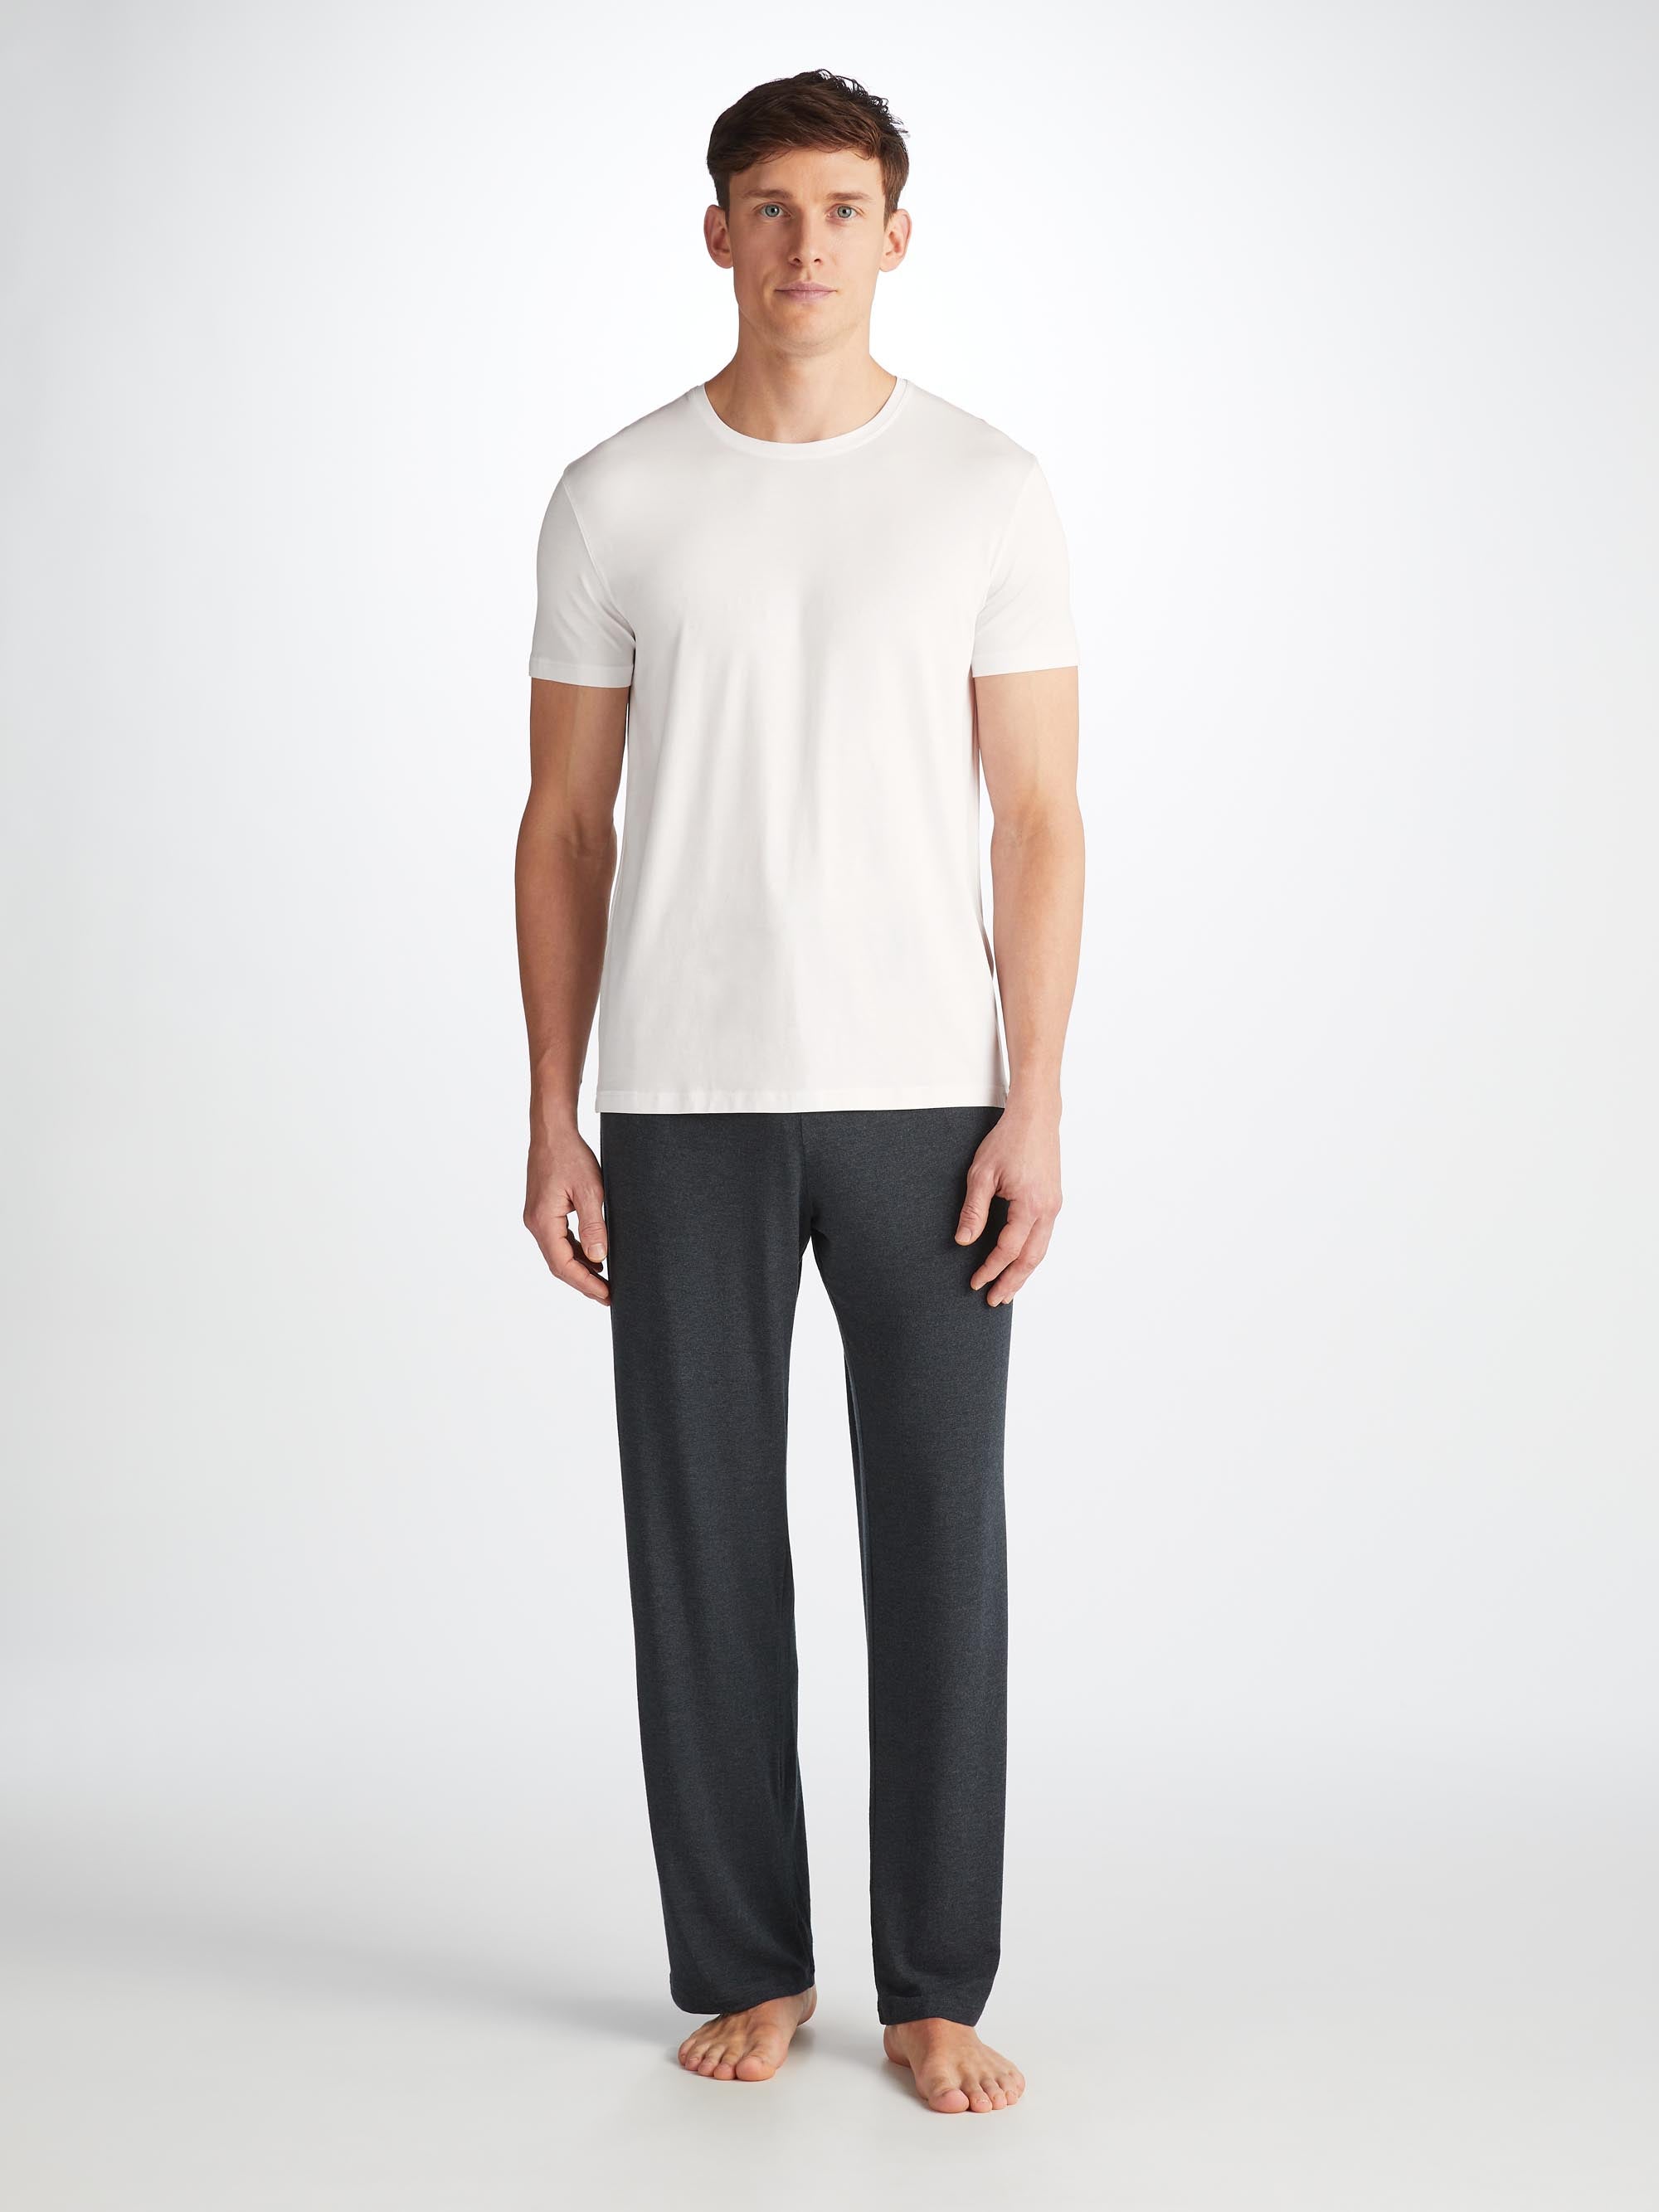 Men's T-Shirt Basel Micro Modal Stretch White